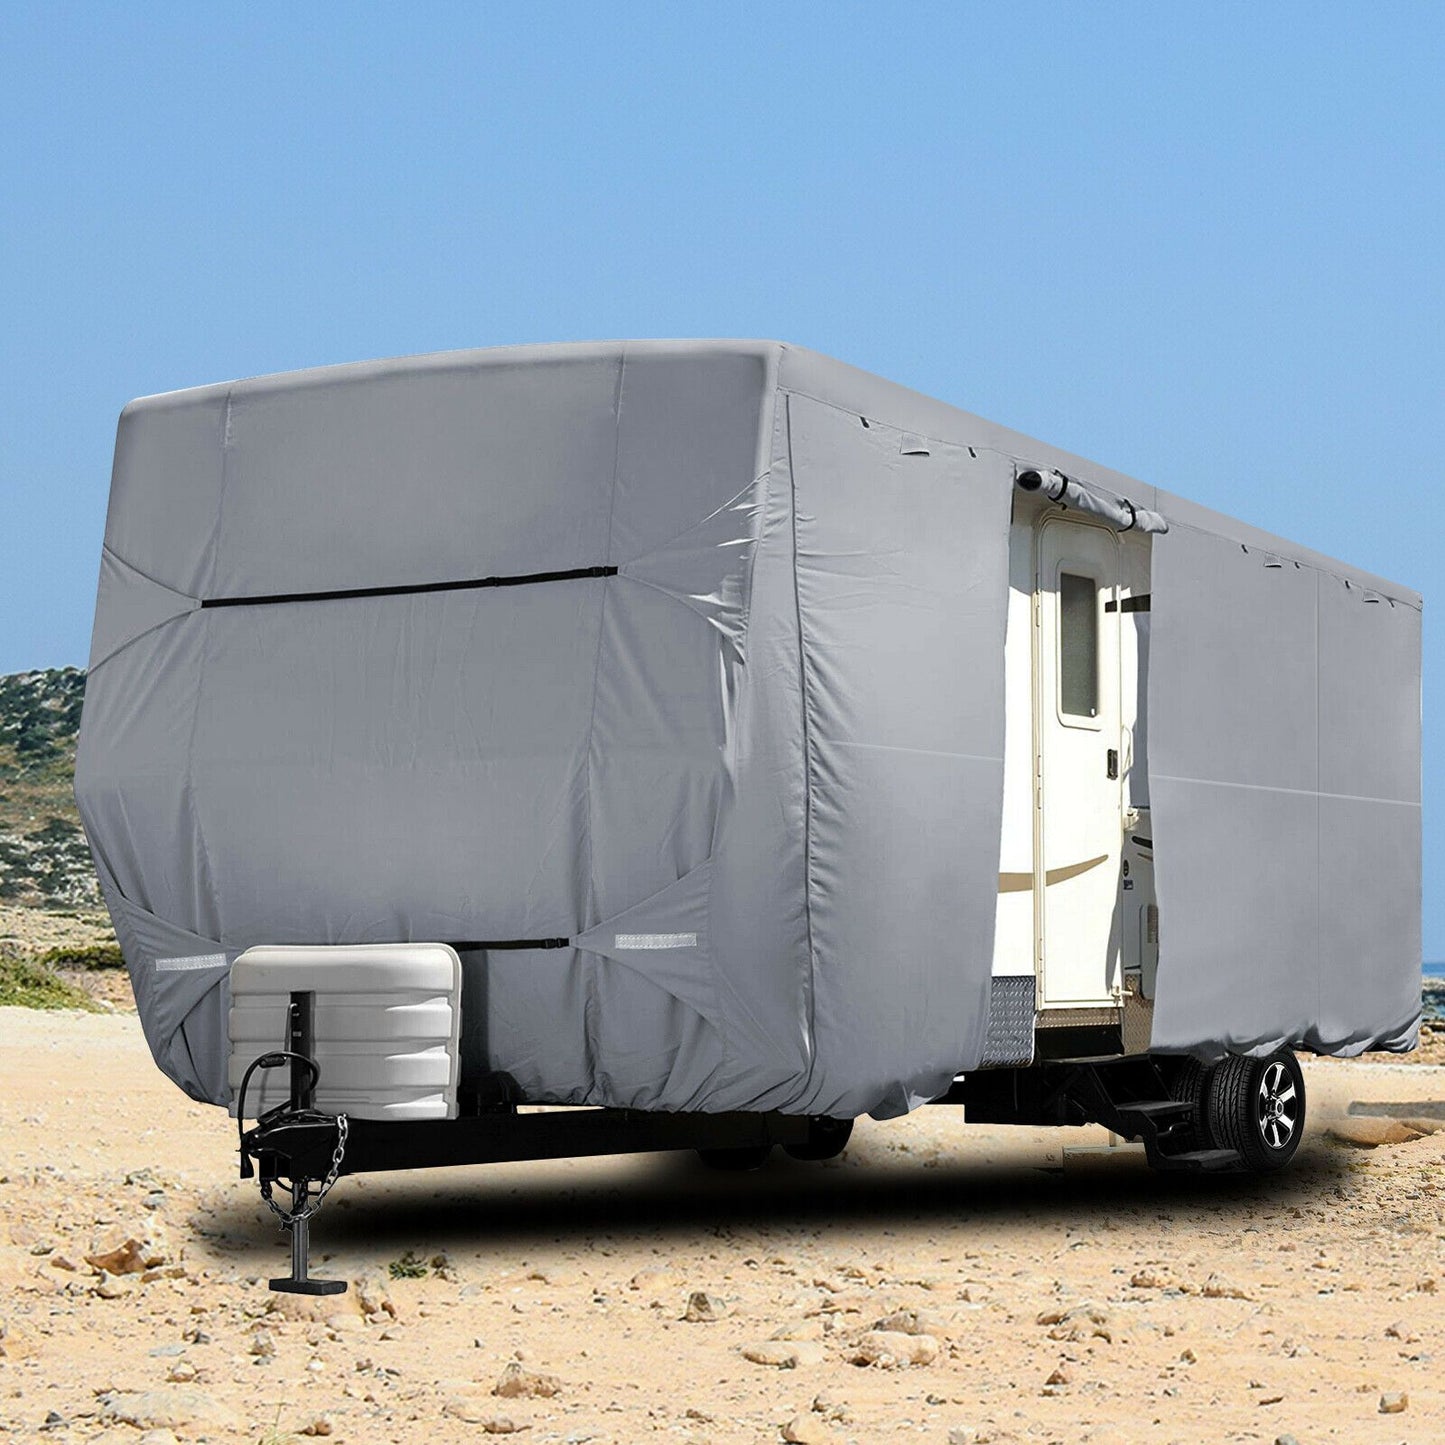 Waterproof RV Travel Trailer Camper Vehicle Storage Motorhome Cover - Westfield Retailers